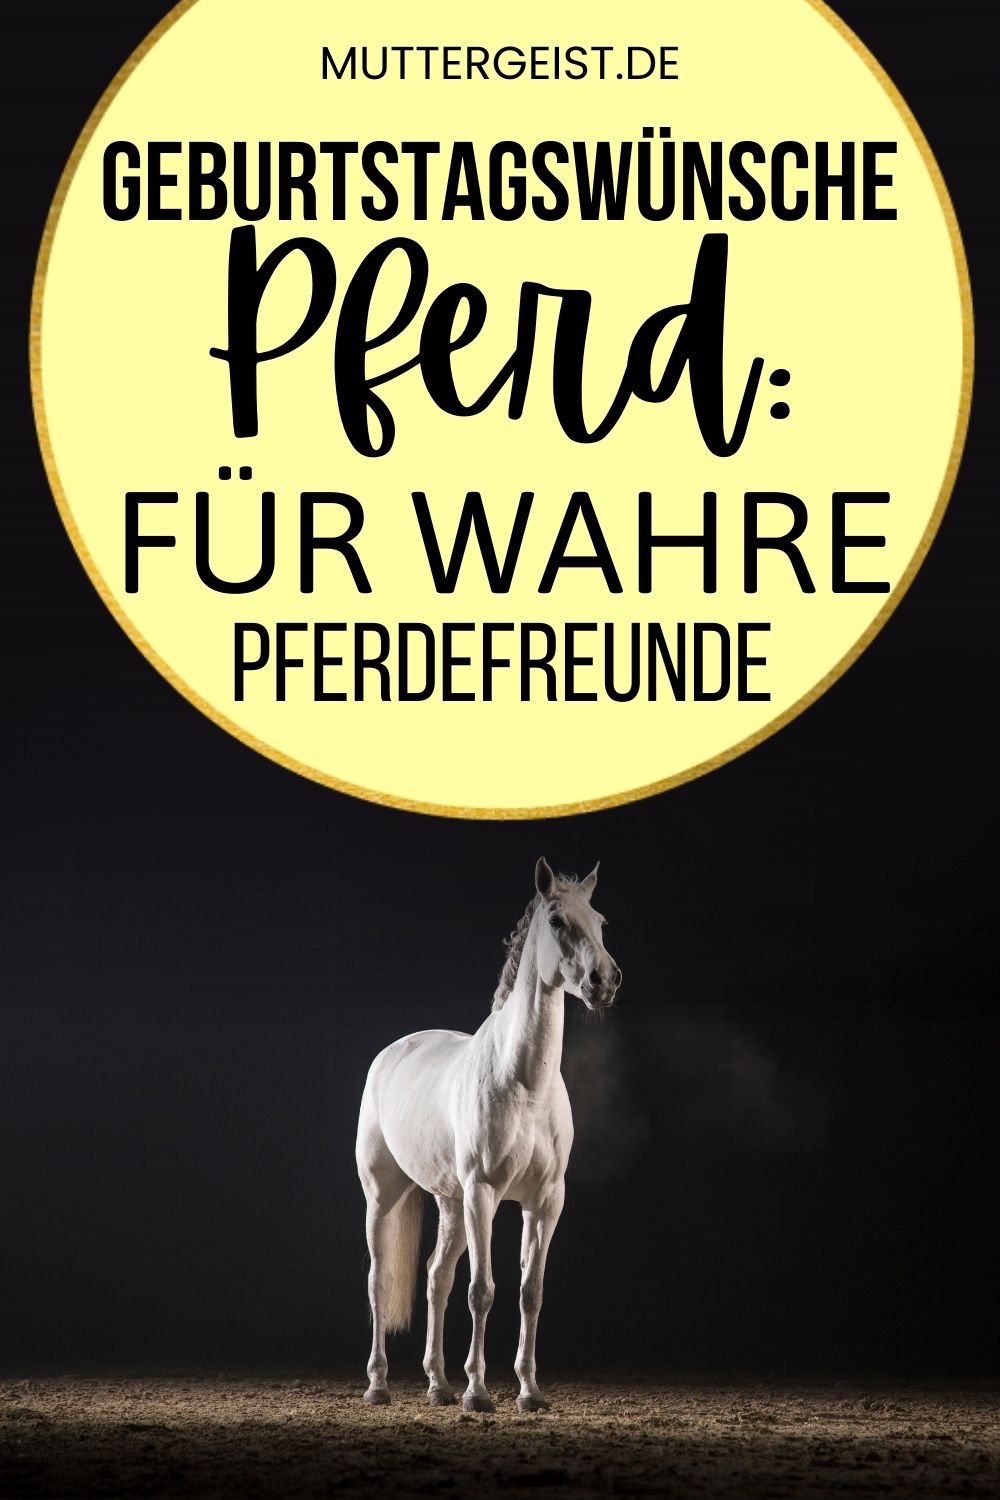 Geburtstagswünsche Pferd – Für wahre Pferdefreunde Pinterest